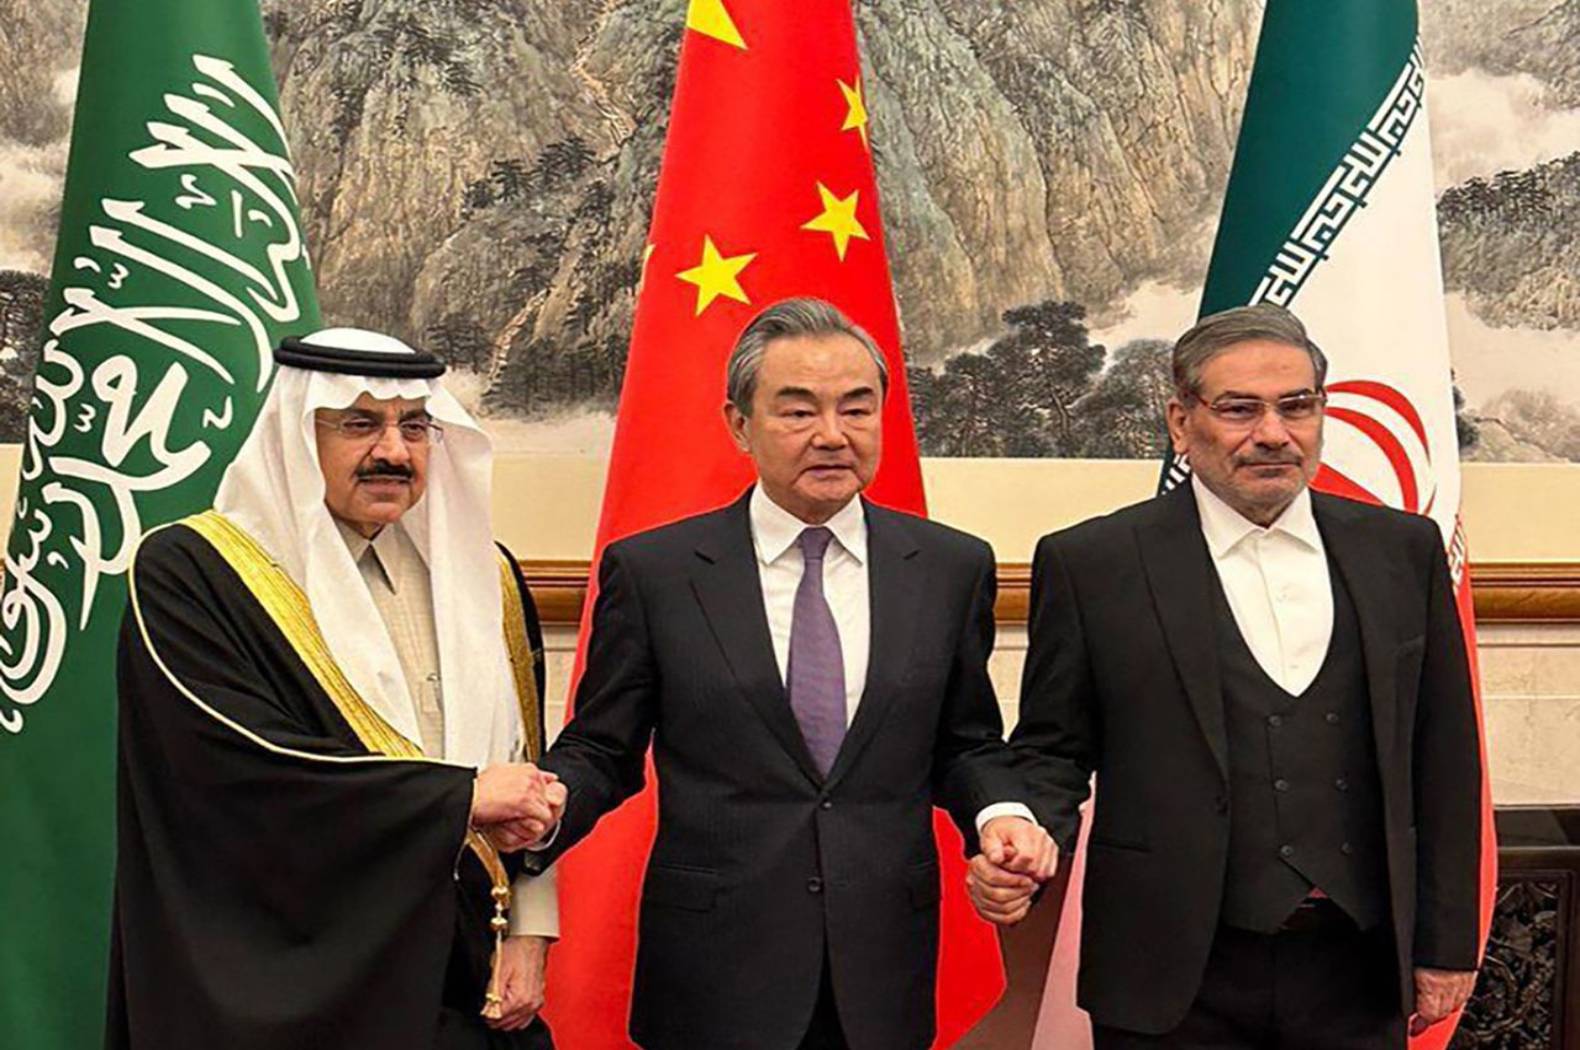 جانب من الإعلان عن الاتفاق بين المملكة العربية السعودية وإيران، بوساطة صينية، لاستئناف العلاقات الدبلوماسية (وكالات)